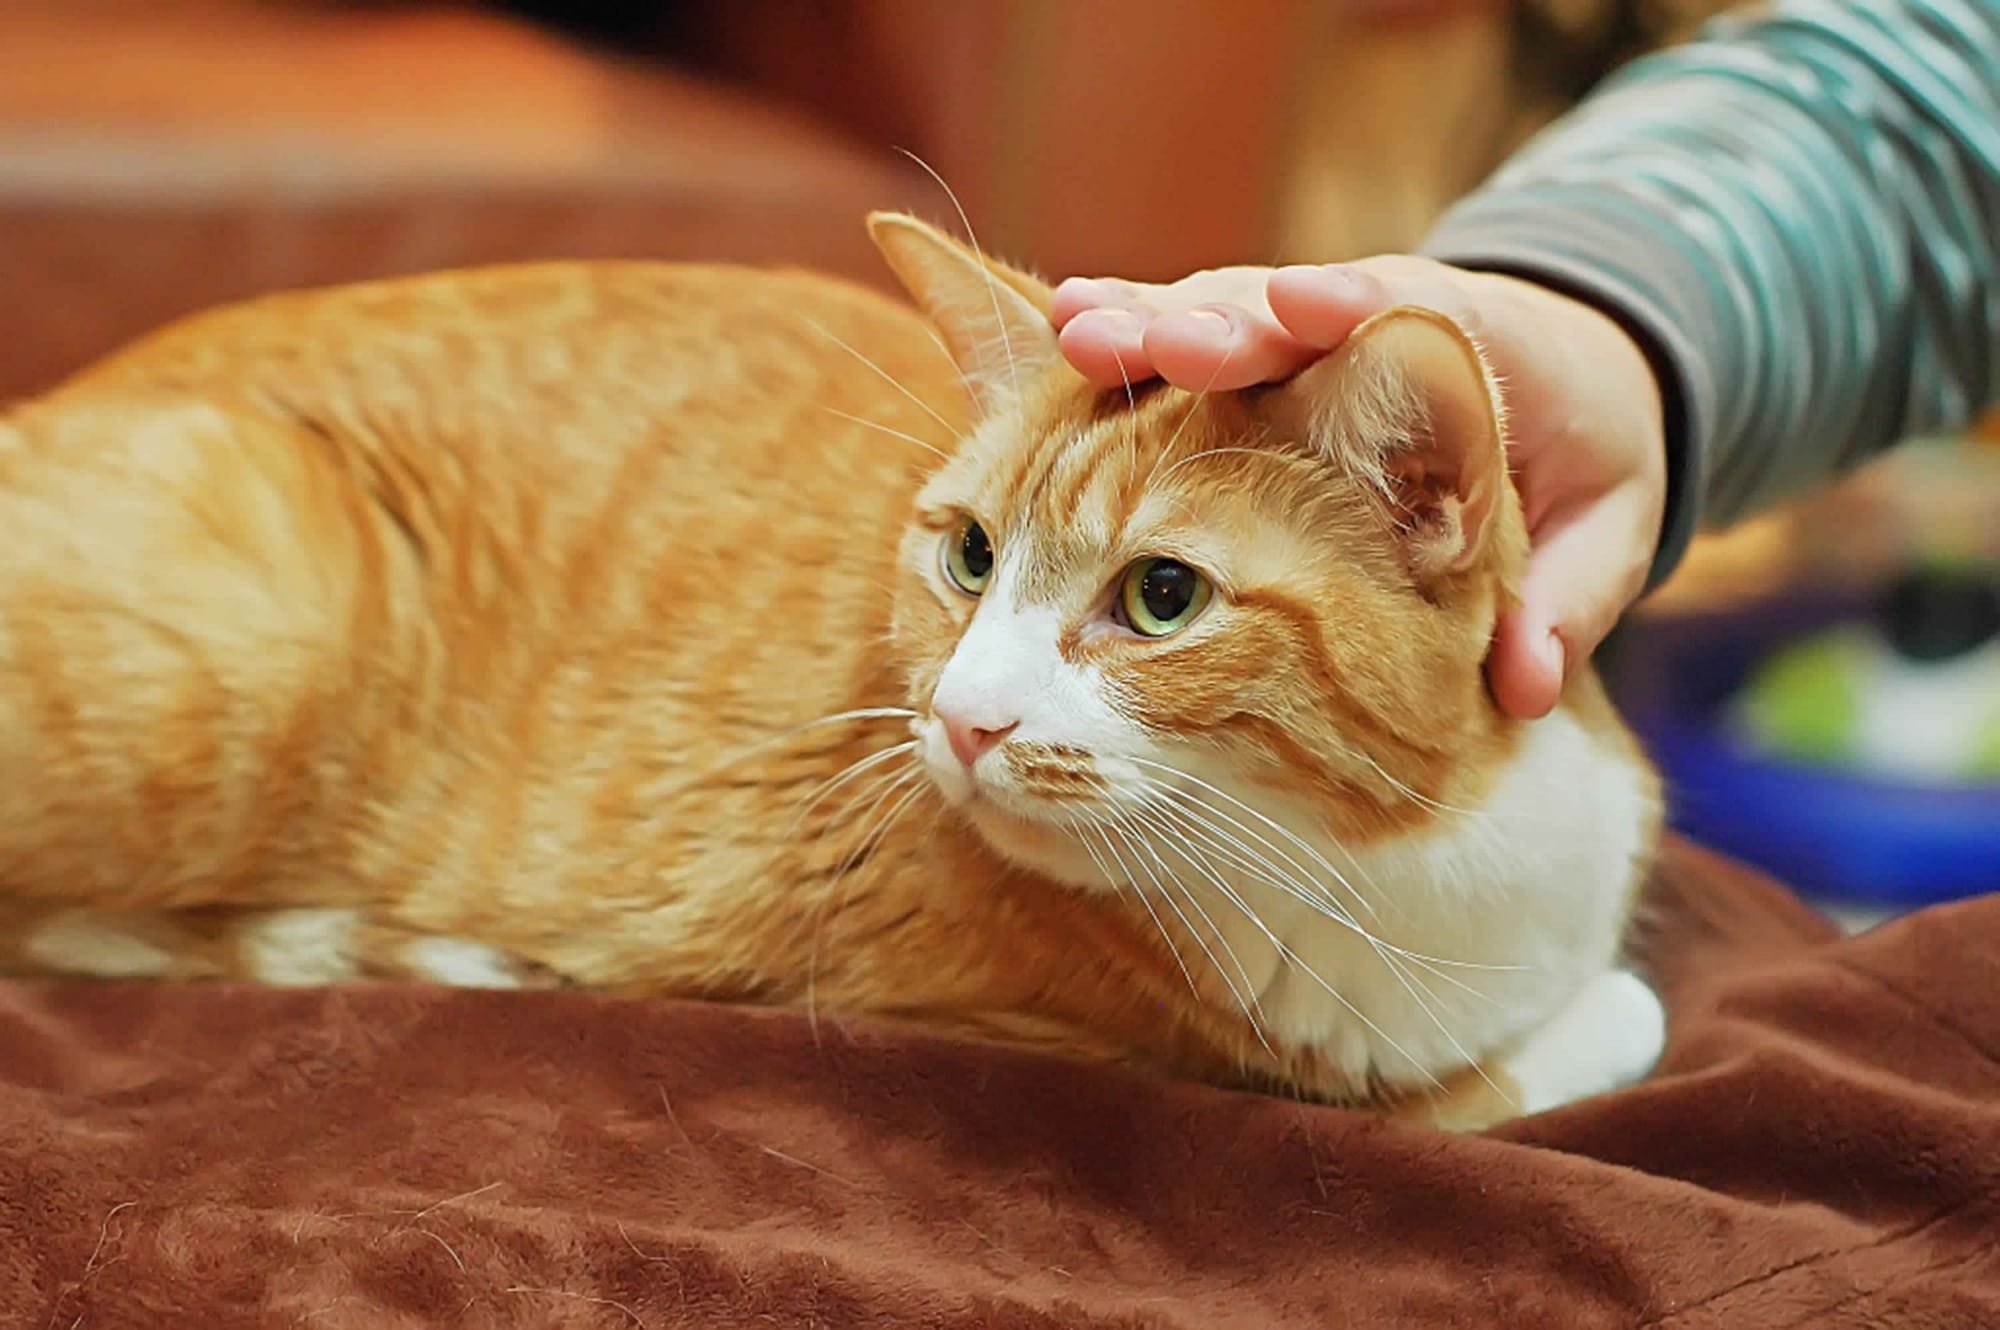 دراسة صينية: القطط أكثر الحيوانات الأليفة المعرضة للإصابة بفيروس كورونا